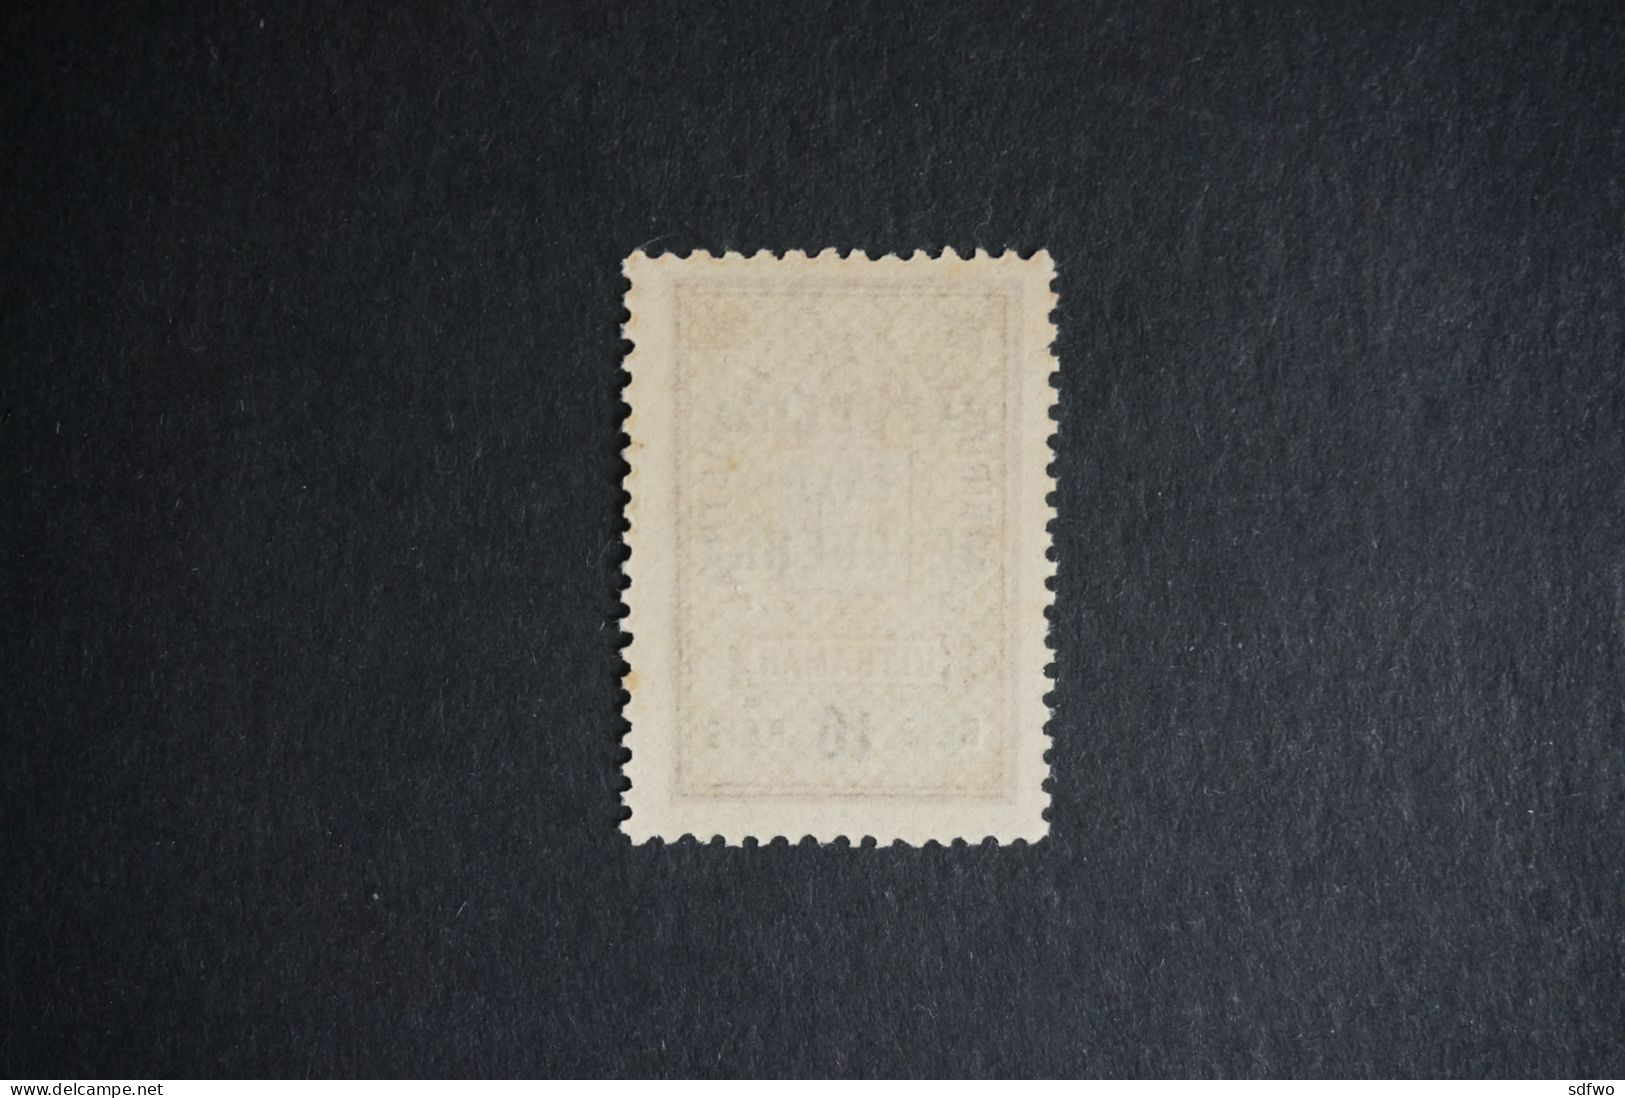 (T1) Portuguese Guinea - 1919  War Tax Stamp - TAXA DE GUERRA - 10 R (No Gum) - Portuguese Guinea